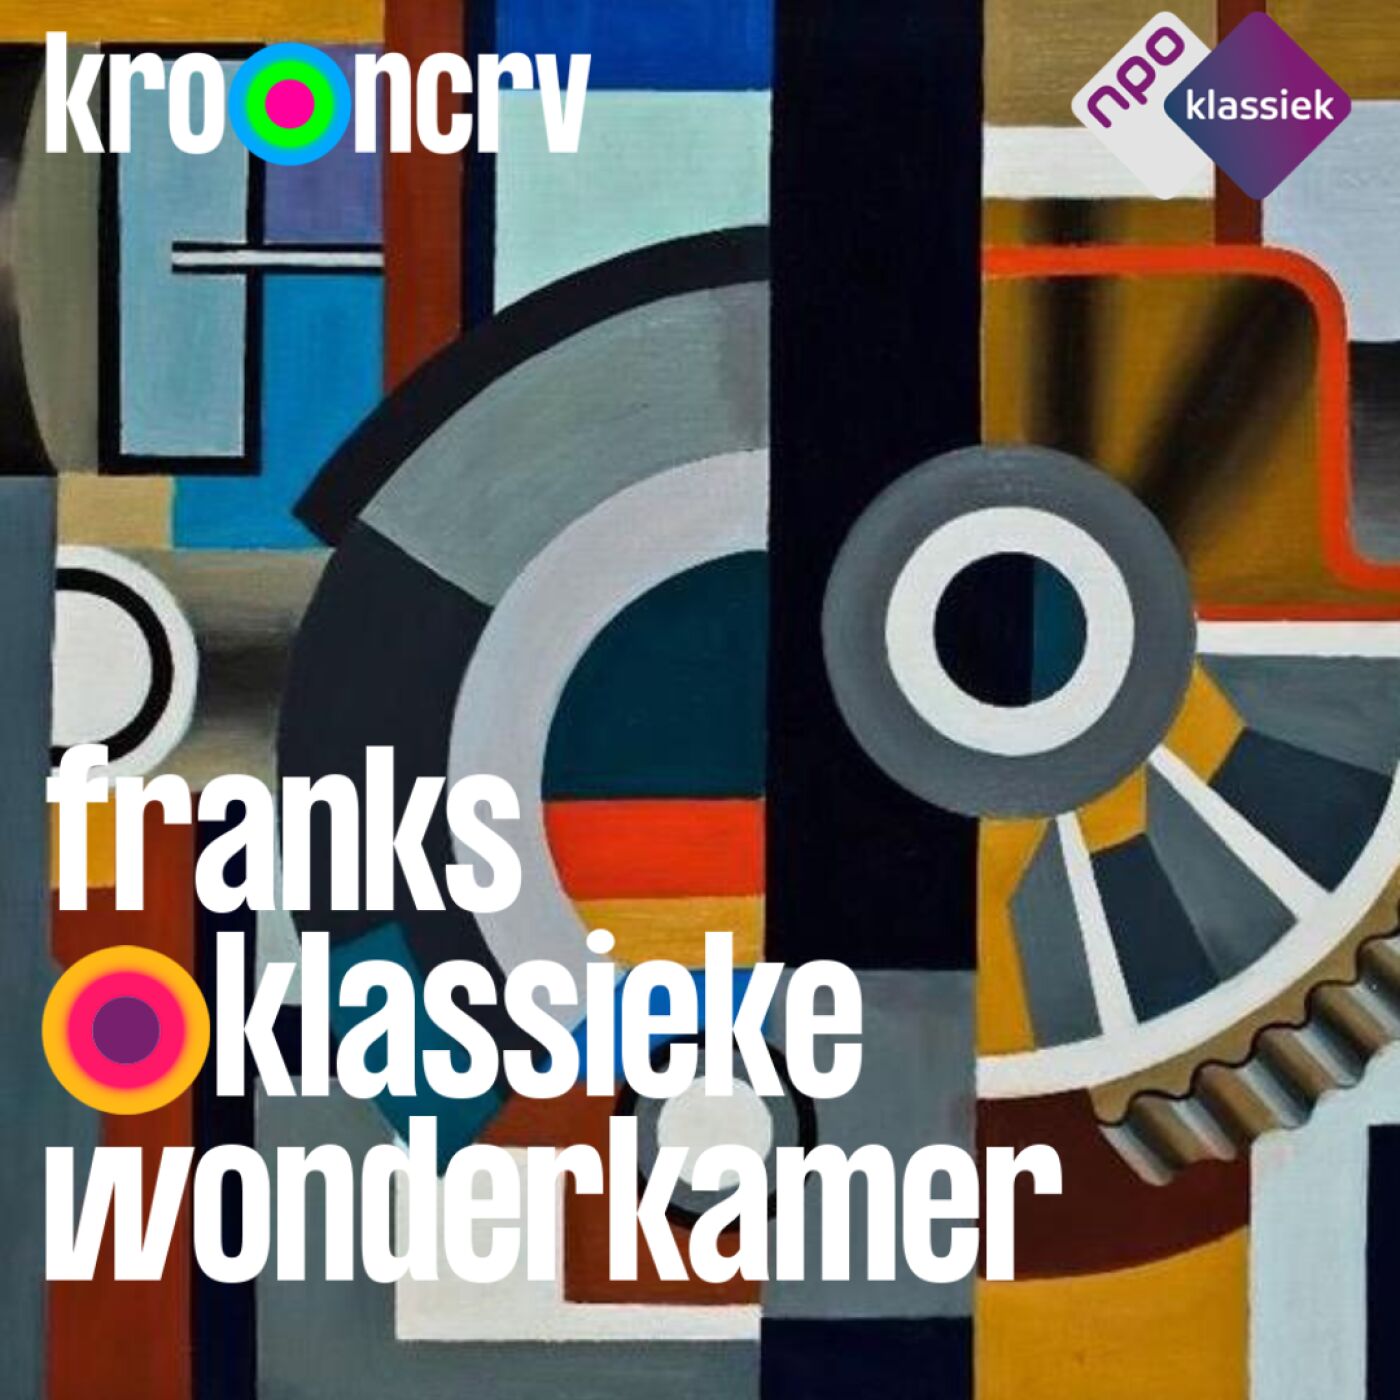 #209 - Franks Klassieke Wonderkamer: 'Spel voor mij en andere kinderen'